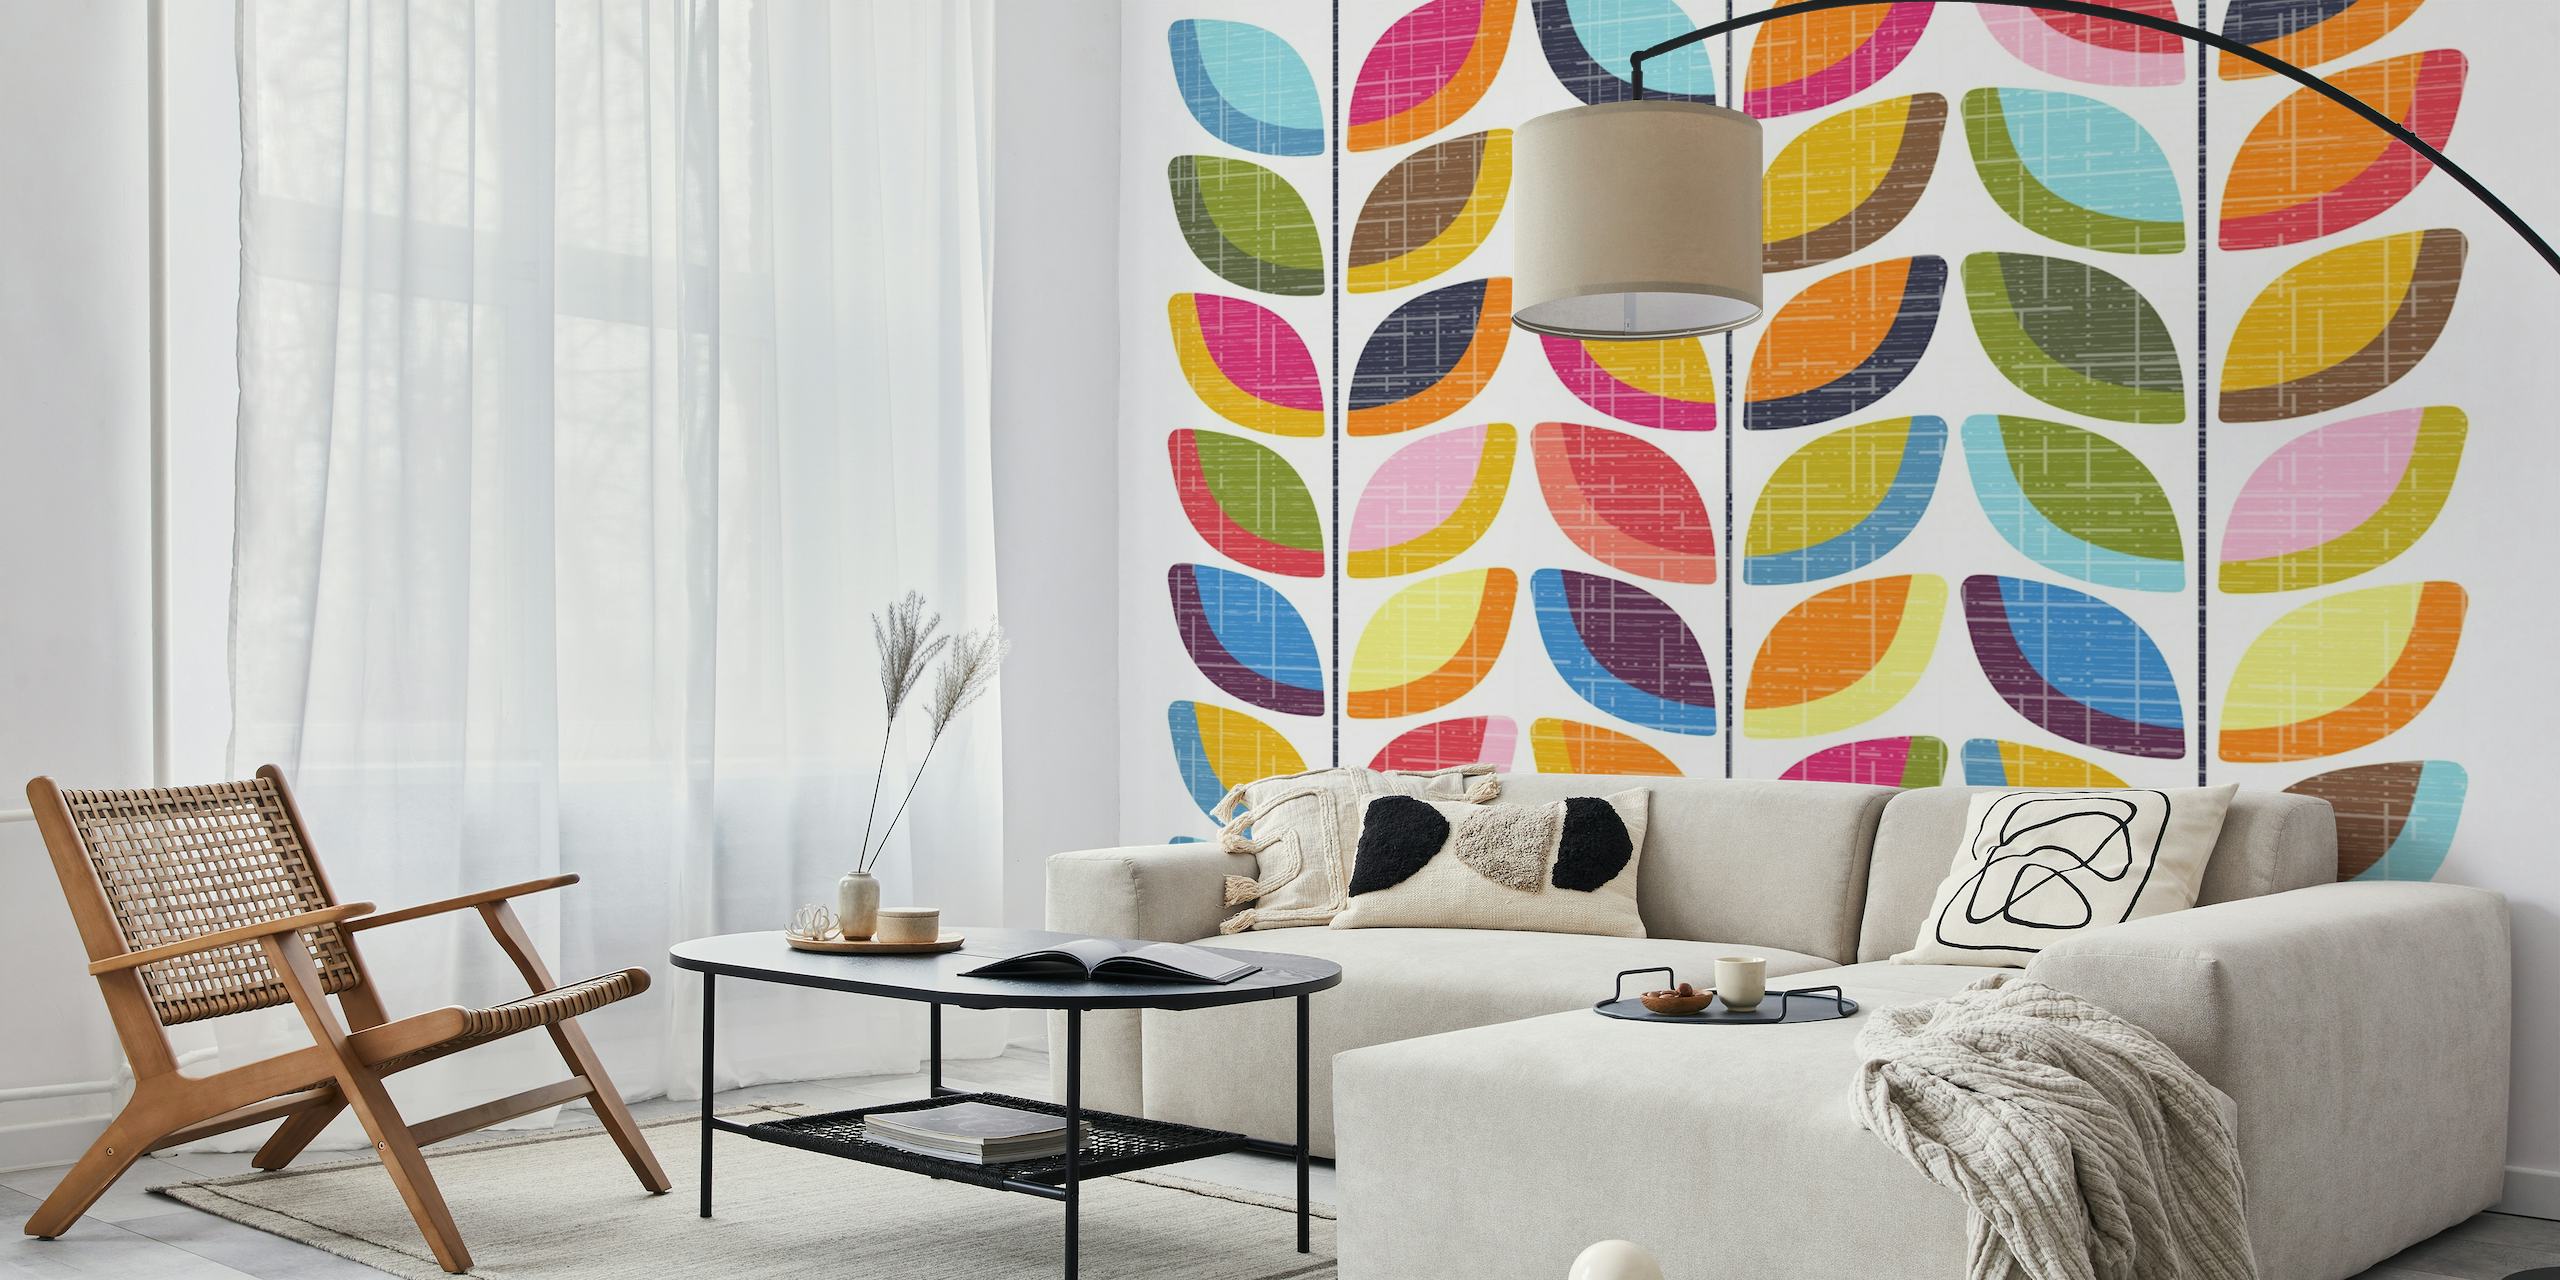 Stiliserede vinmønstre med stofteksturerede blade i efterårsfarver på et vægmaleri.